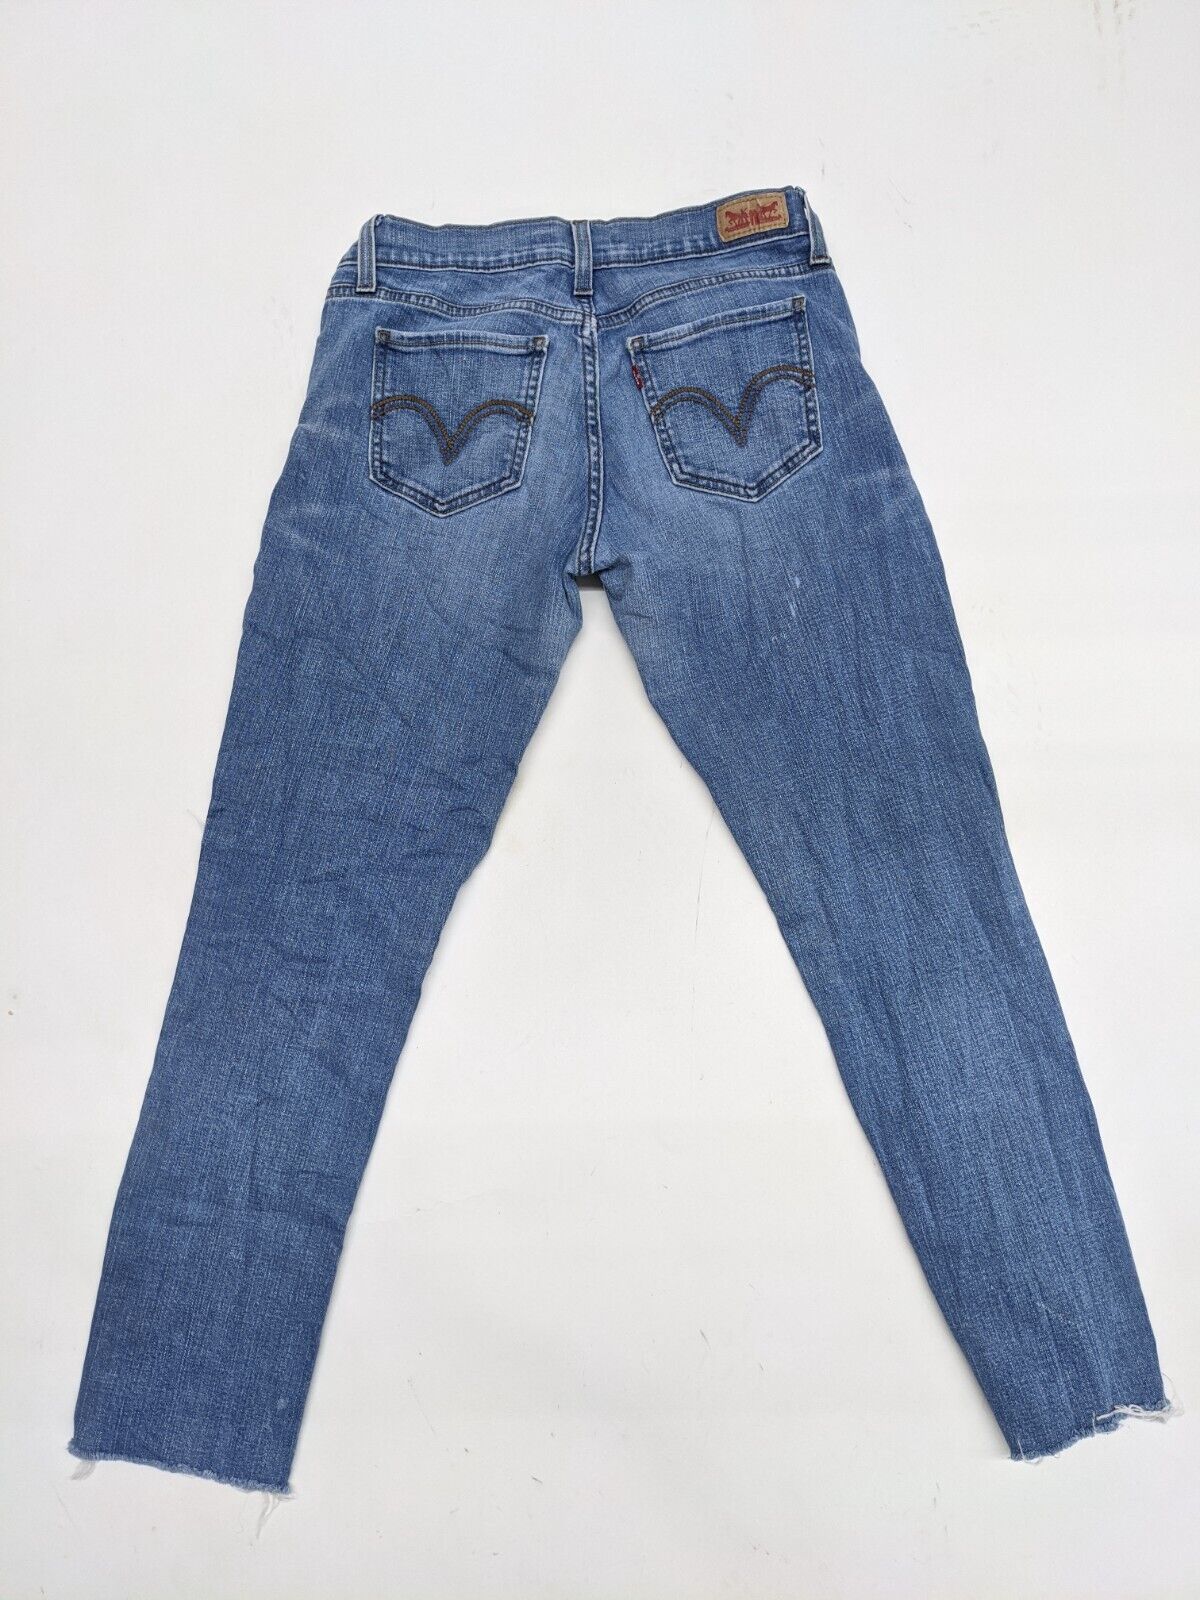 Levi's 524 Men's Denim Jeans Too Super Low Slim Distressed Raw Hem Blue Size 7M